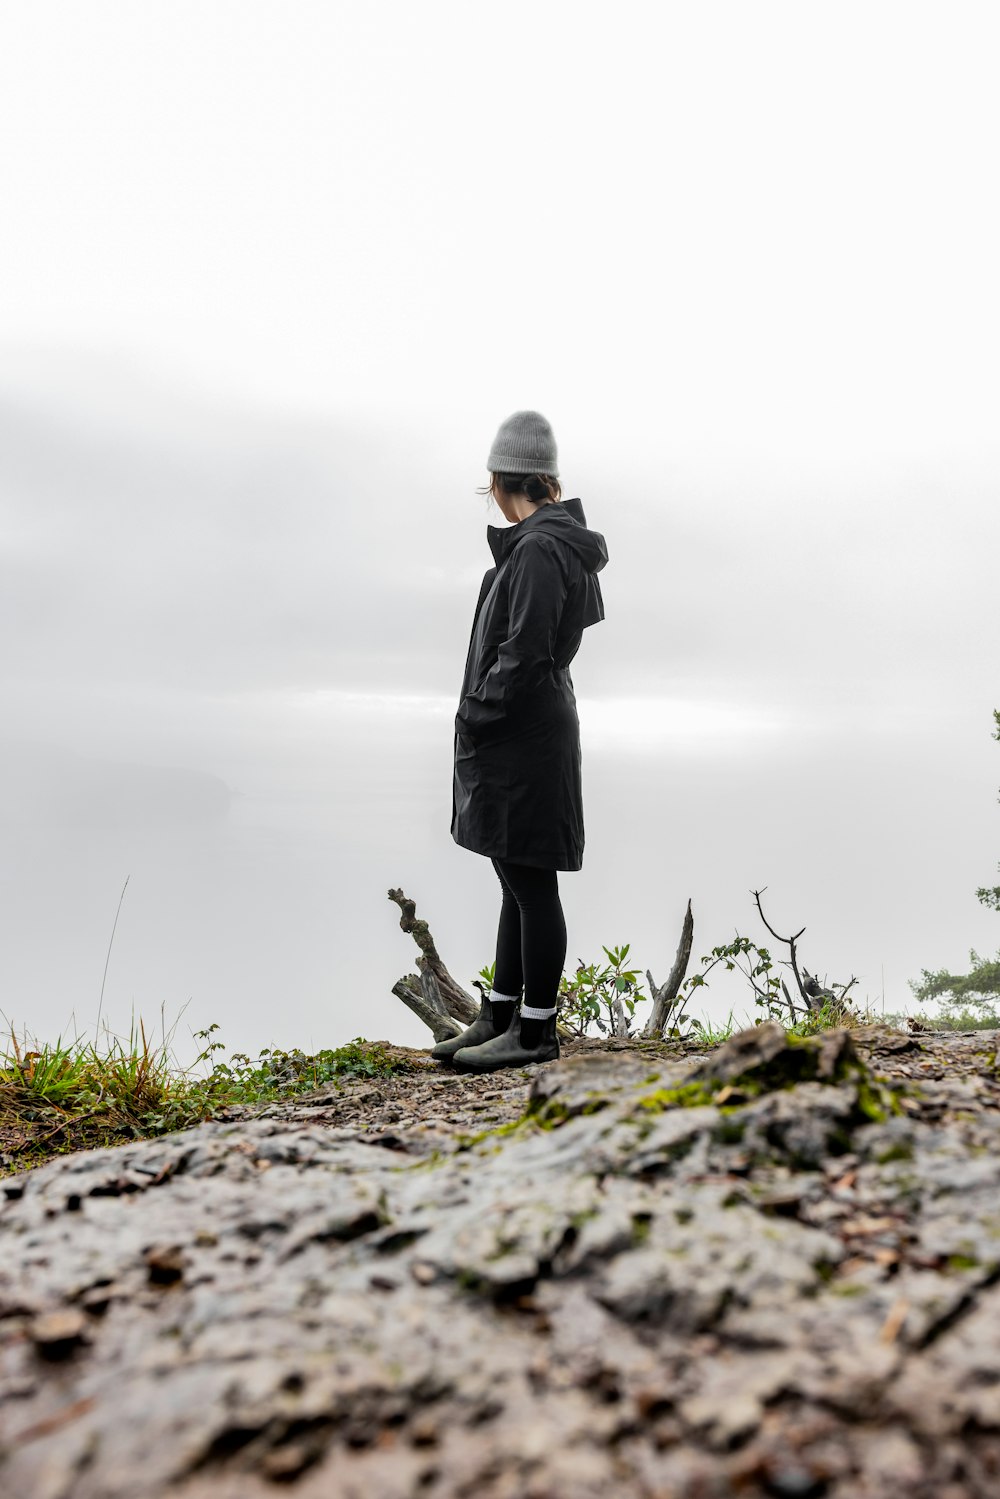 une personne debout au sommet d’une colline rocheuse